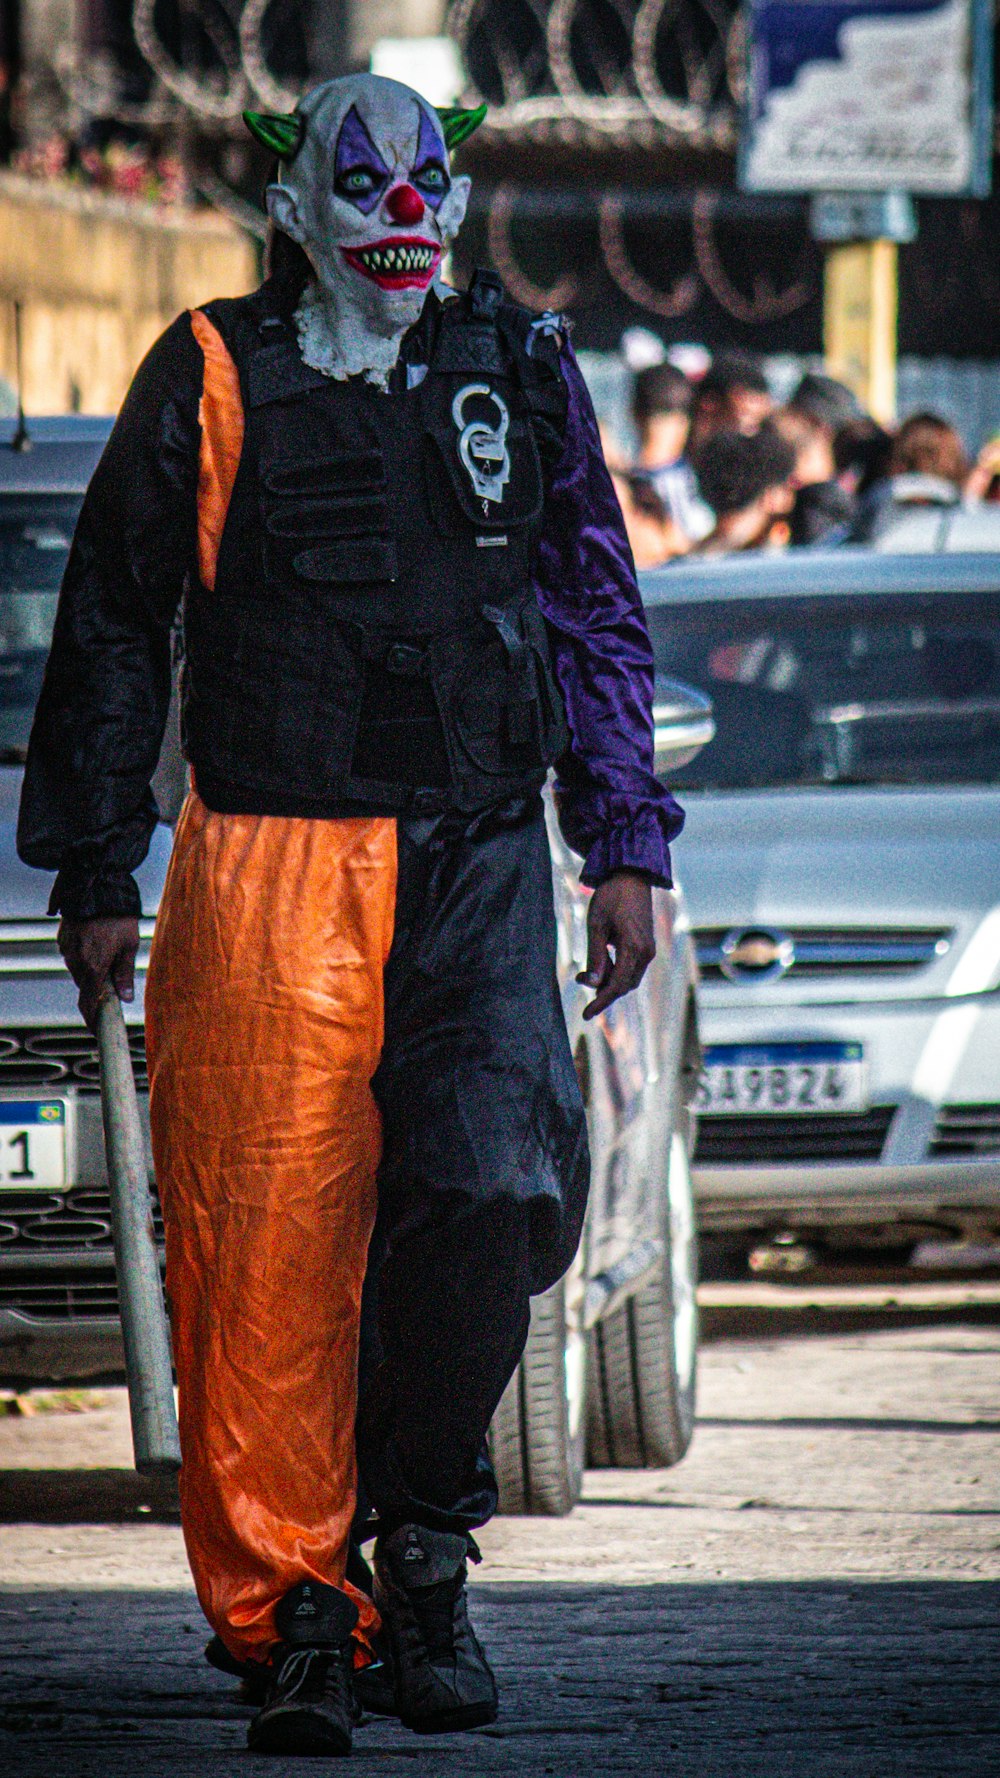 a man dressed as a clown walking down a street